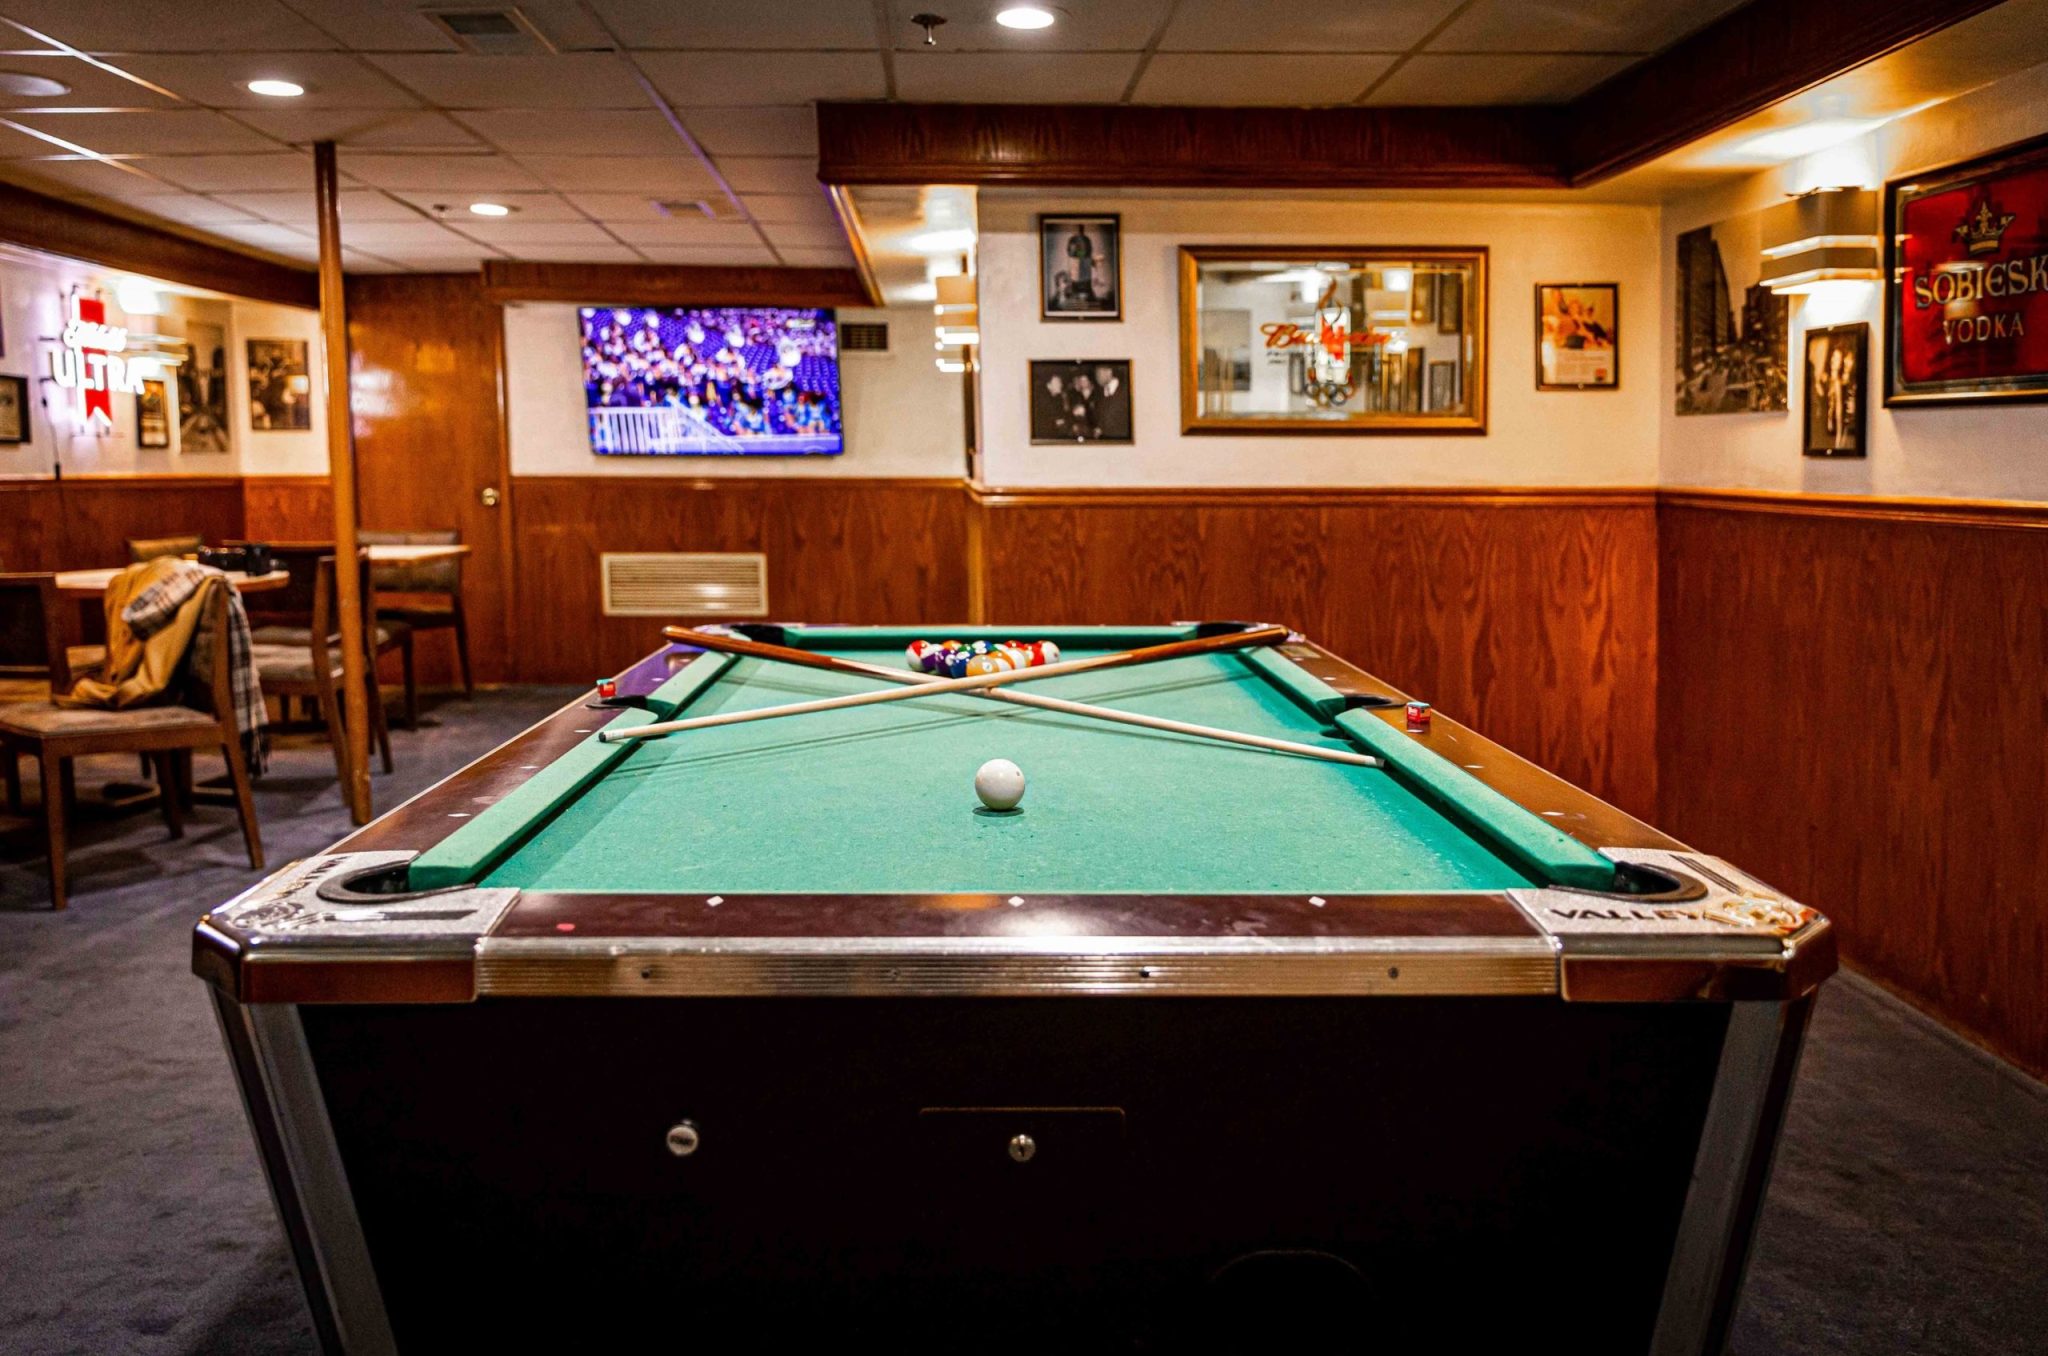 cardozos-pub-with-pool-table-view